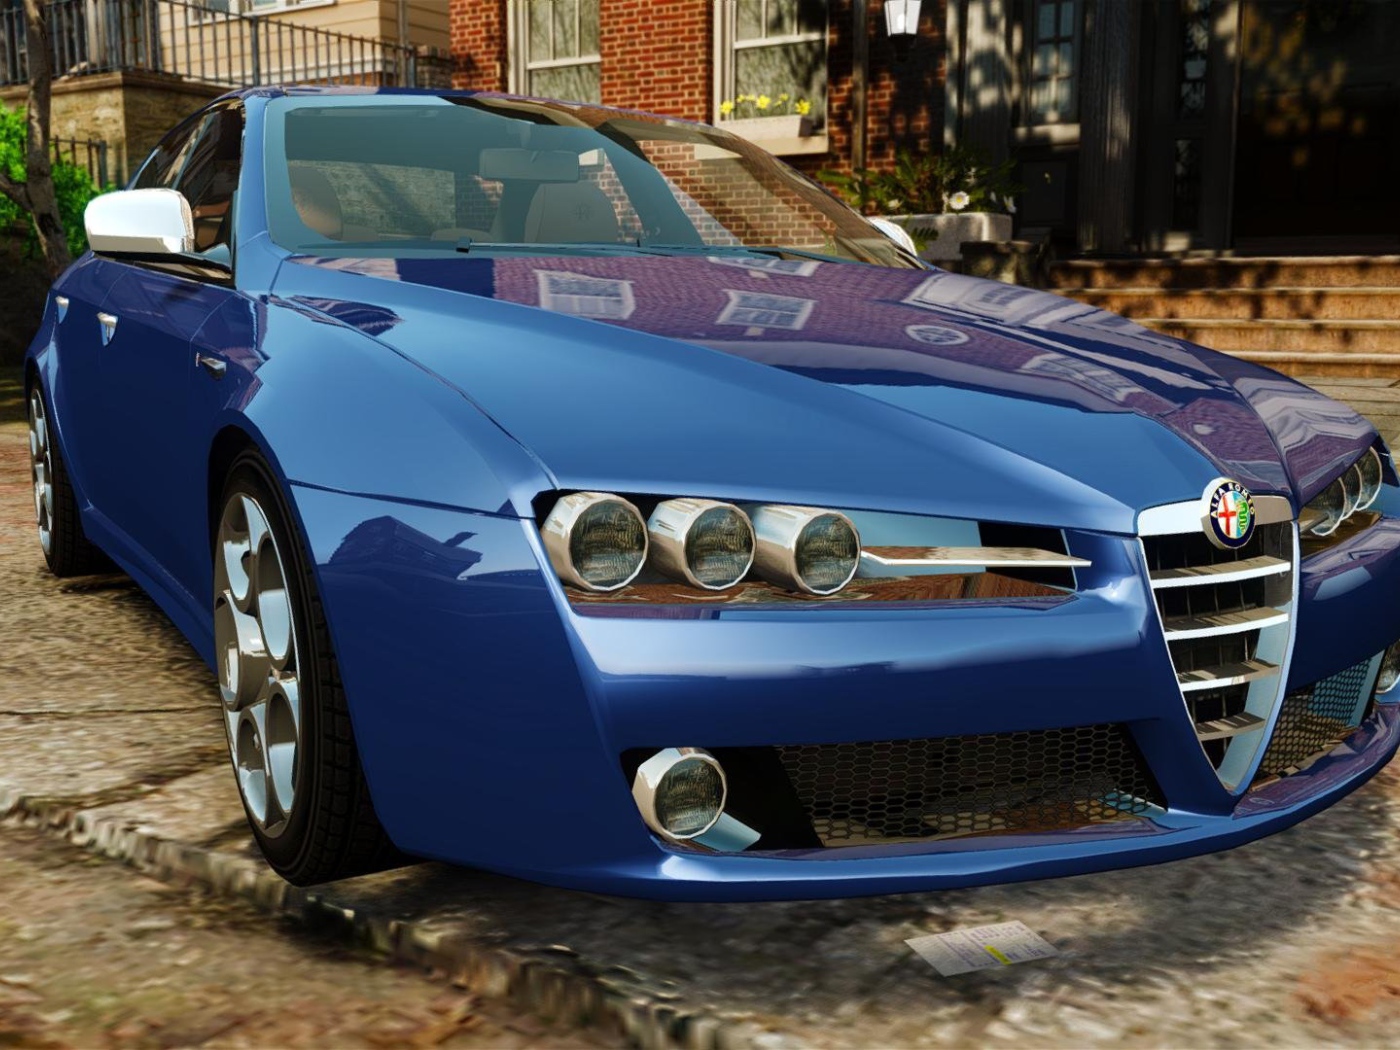 Blue Alfa Romeo 159